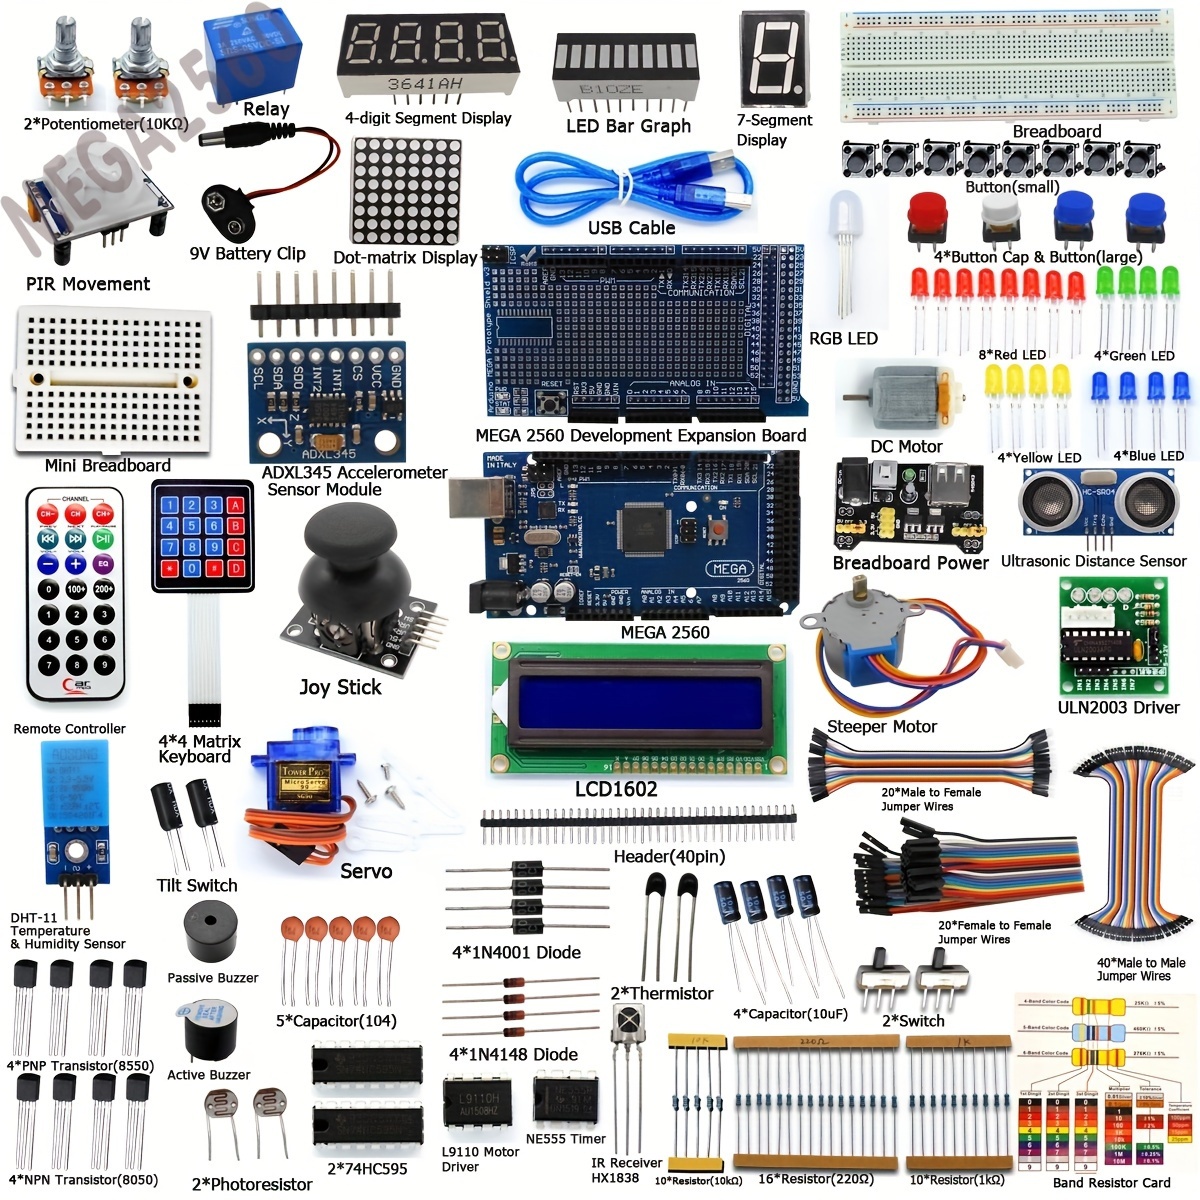 Kit de componentes electrónicos, surtido de diversión para principiantes  con 830 puntos de empate Breadboard, más de 400 componentes